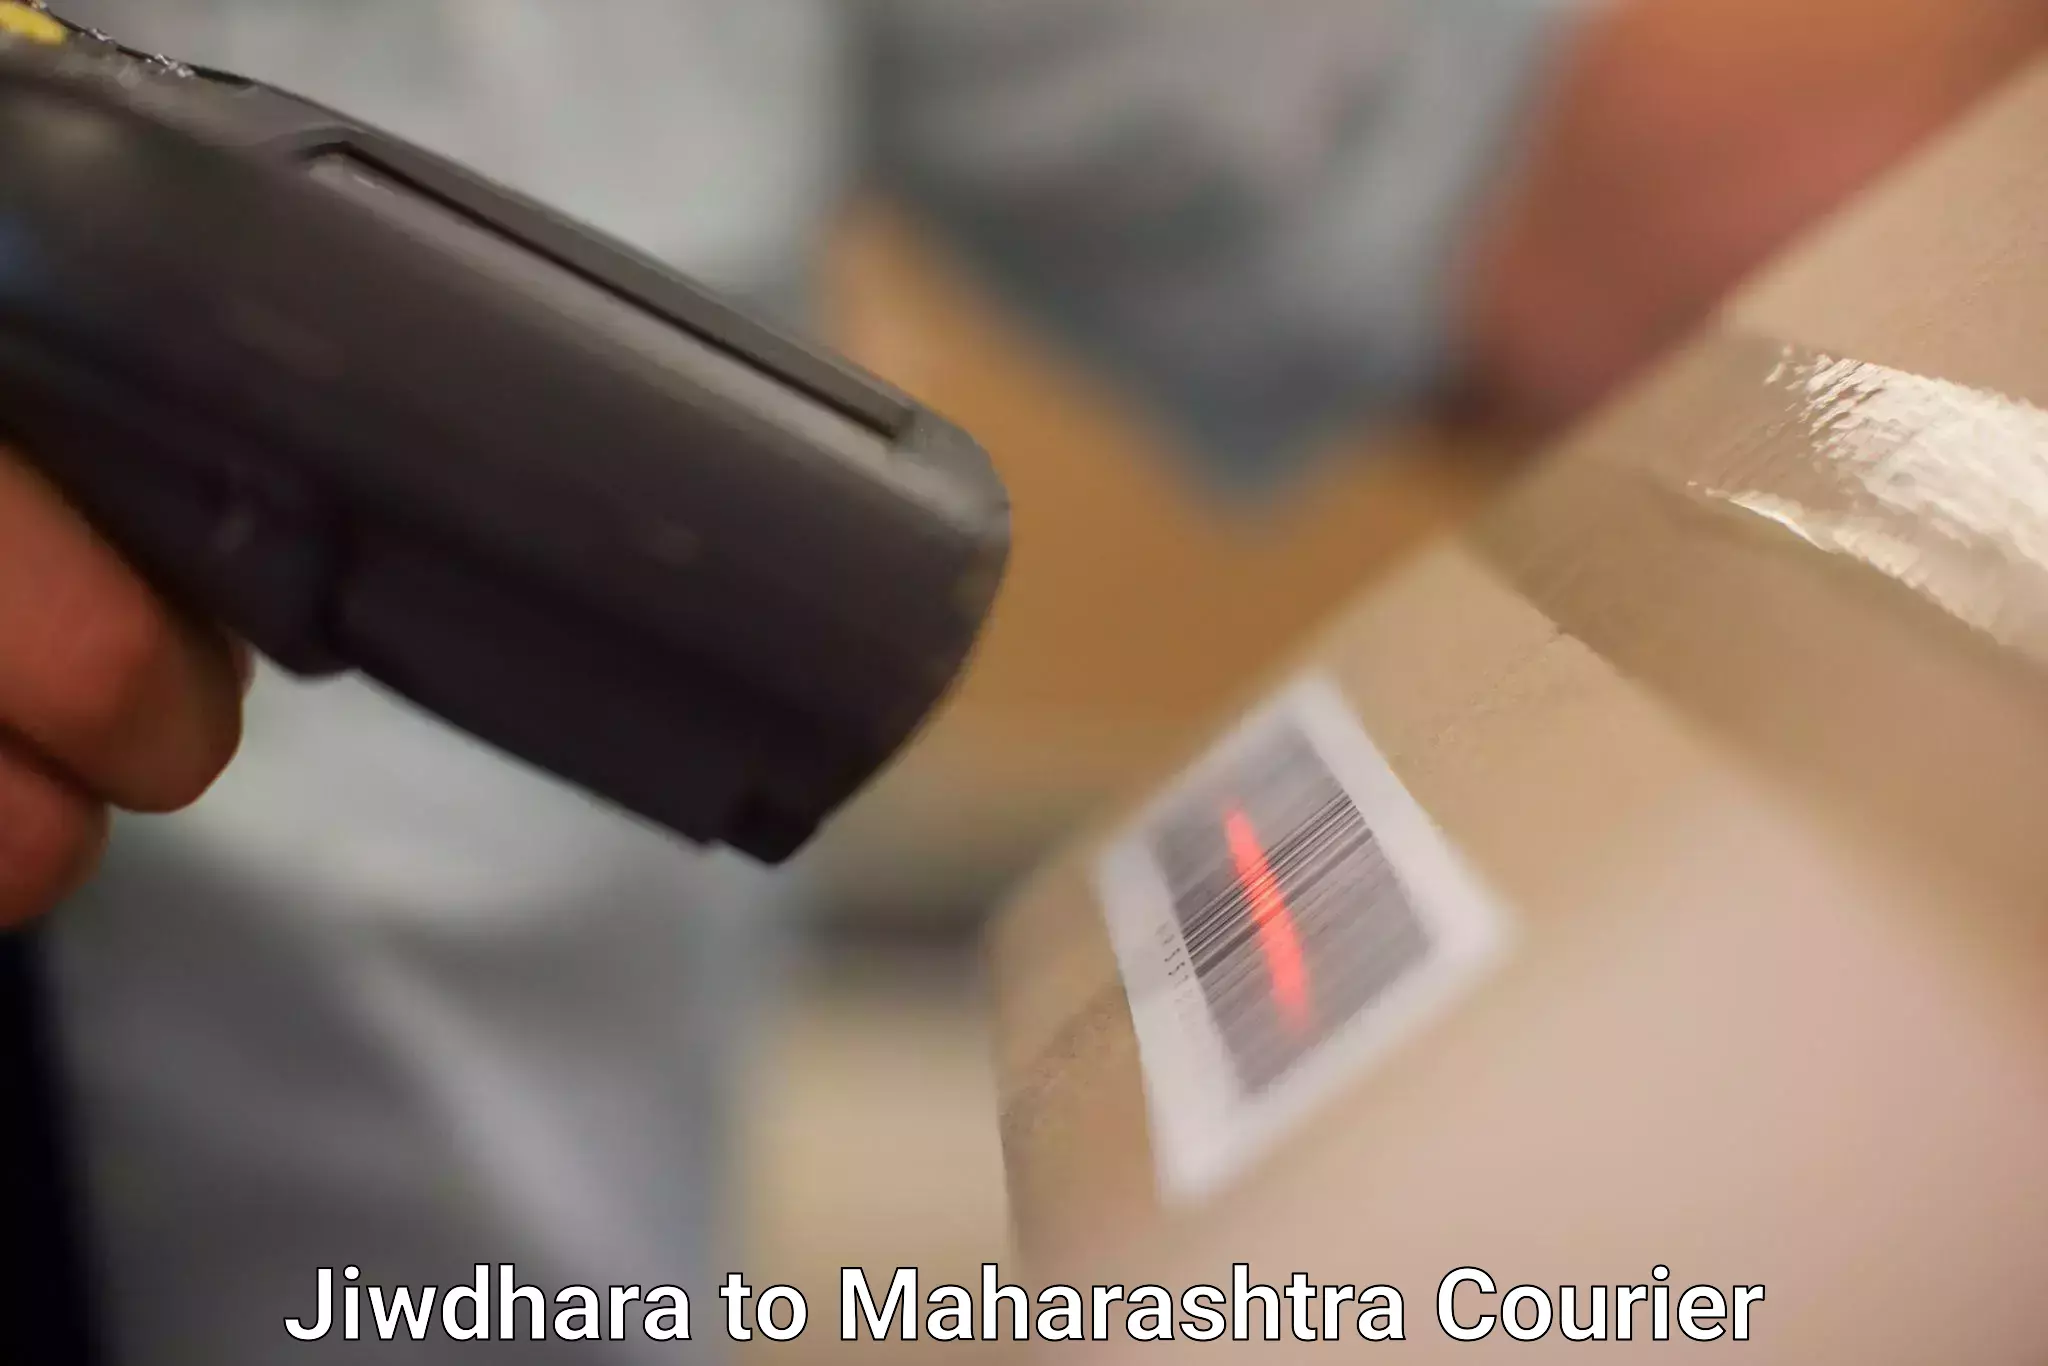 24/7 courier service Jiwdhara to Shirdi